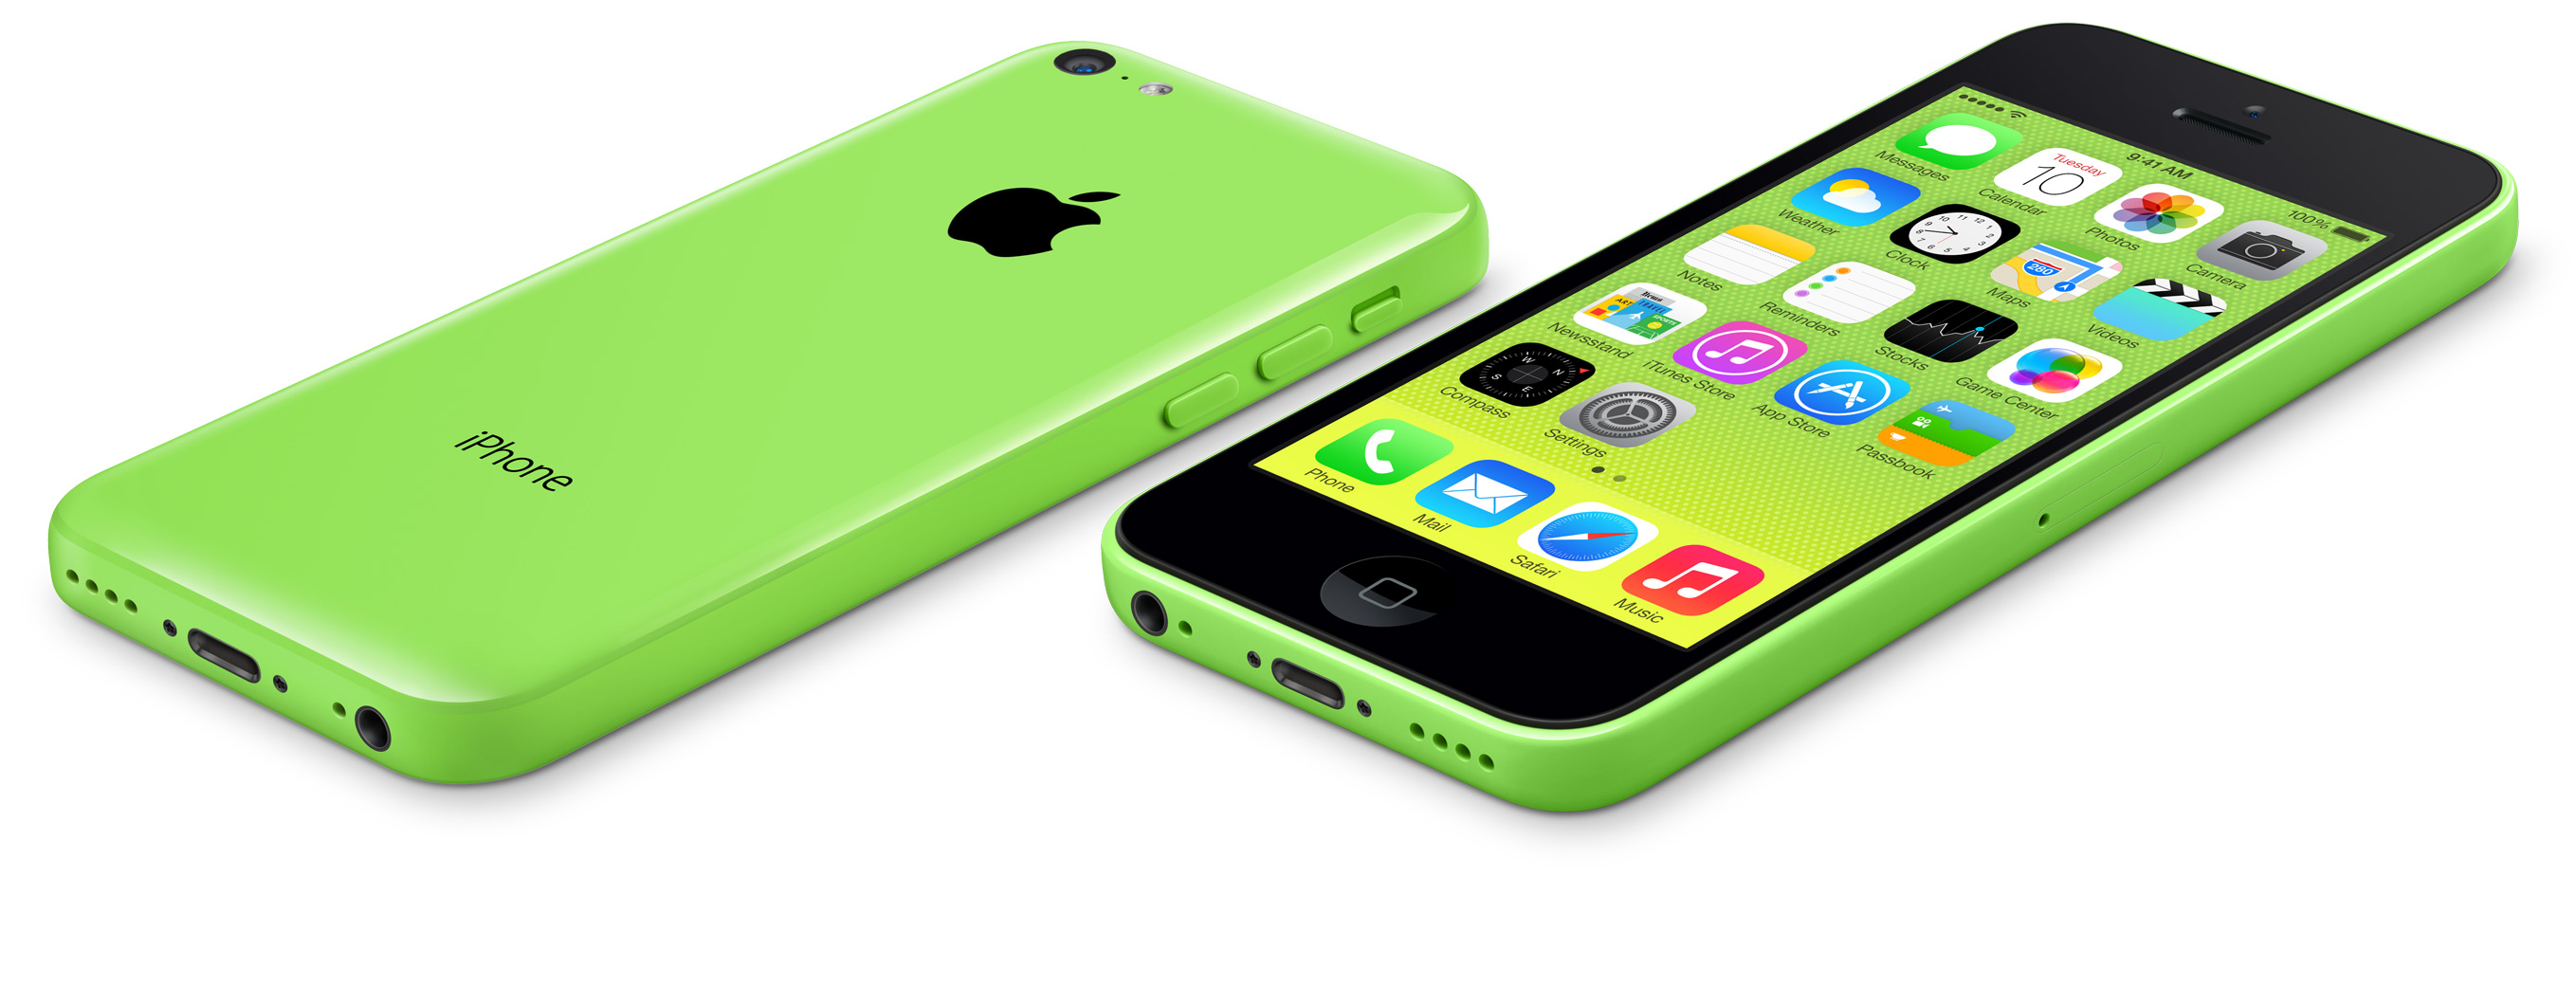 Dua perangkat iPhone 5C berwarna hijau bersebelahan, satu diletakkan telungkup dan yang lainnya menghadap ke depan